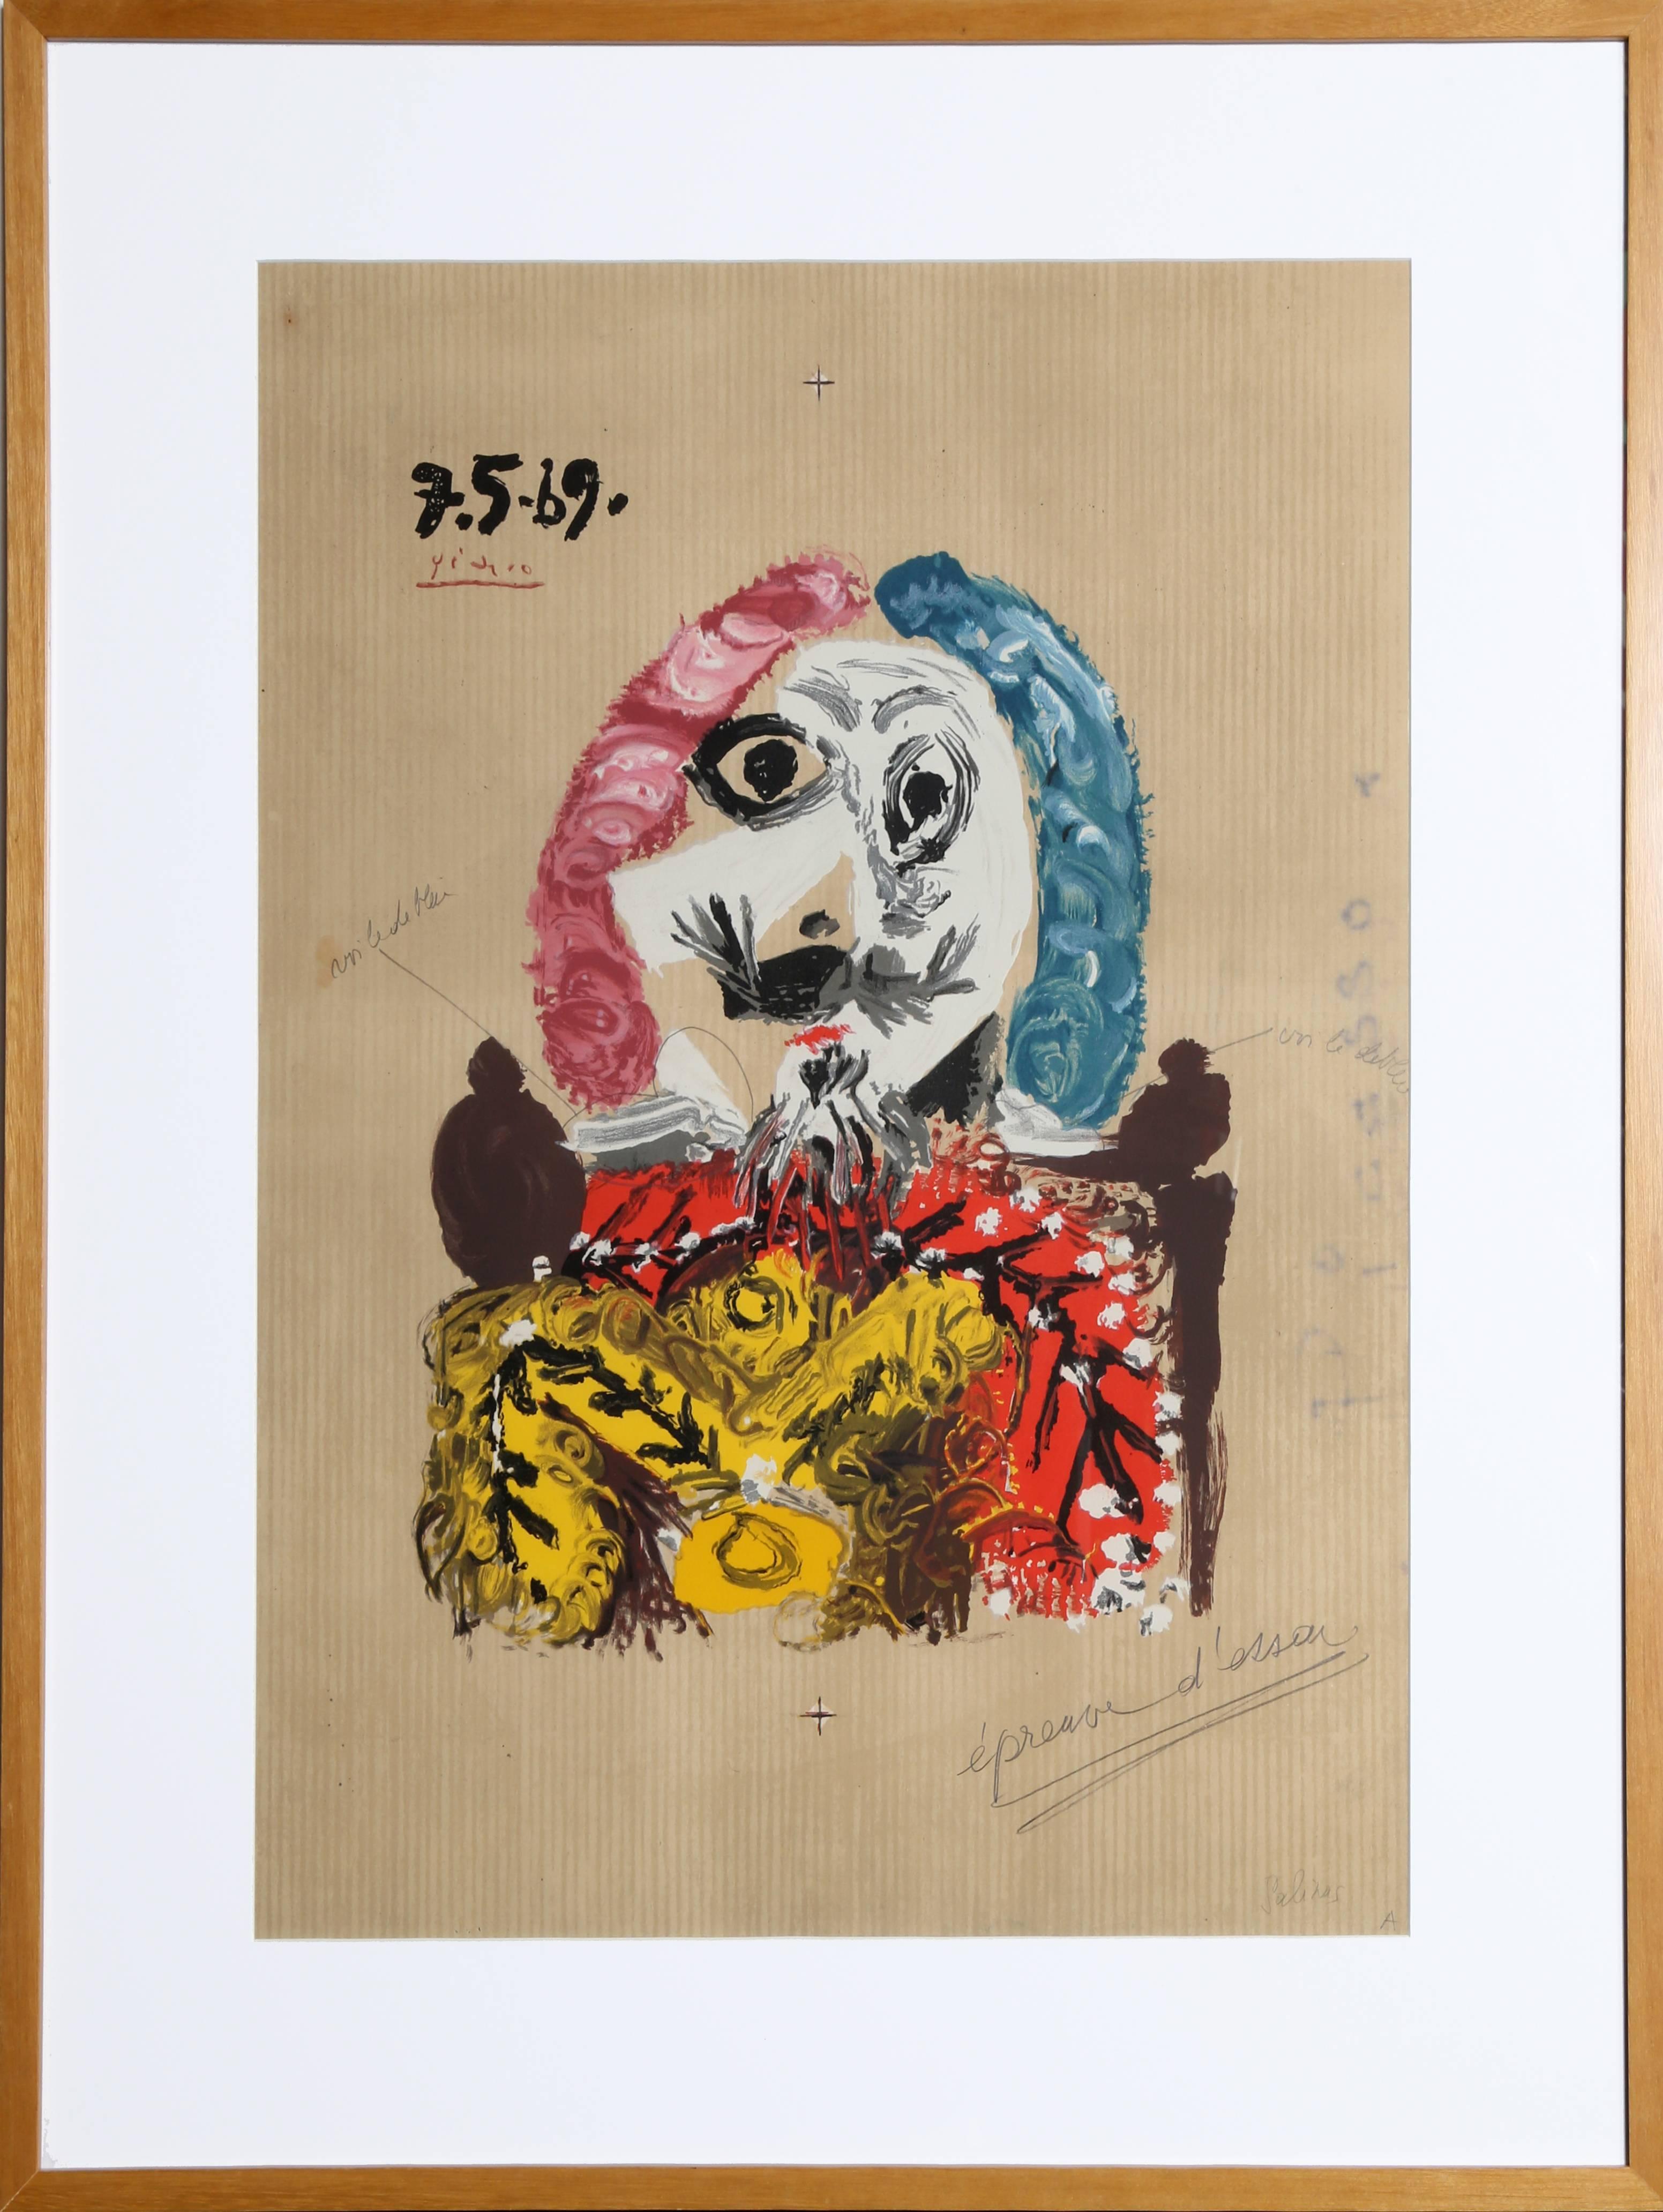 (after) Pablo Picasso Portrait Print - Imaginary Portrait, Lithograph in Colors, 1969